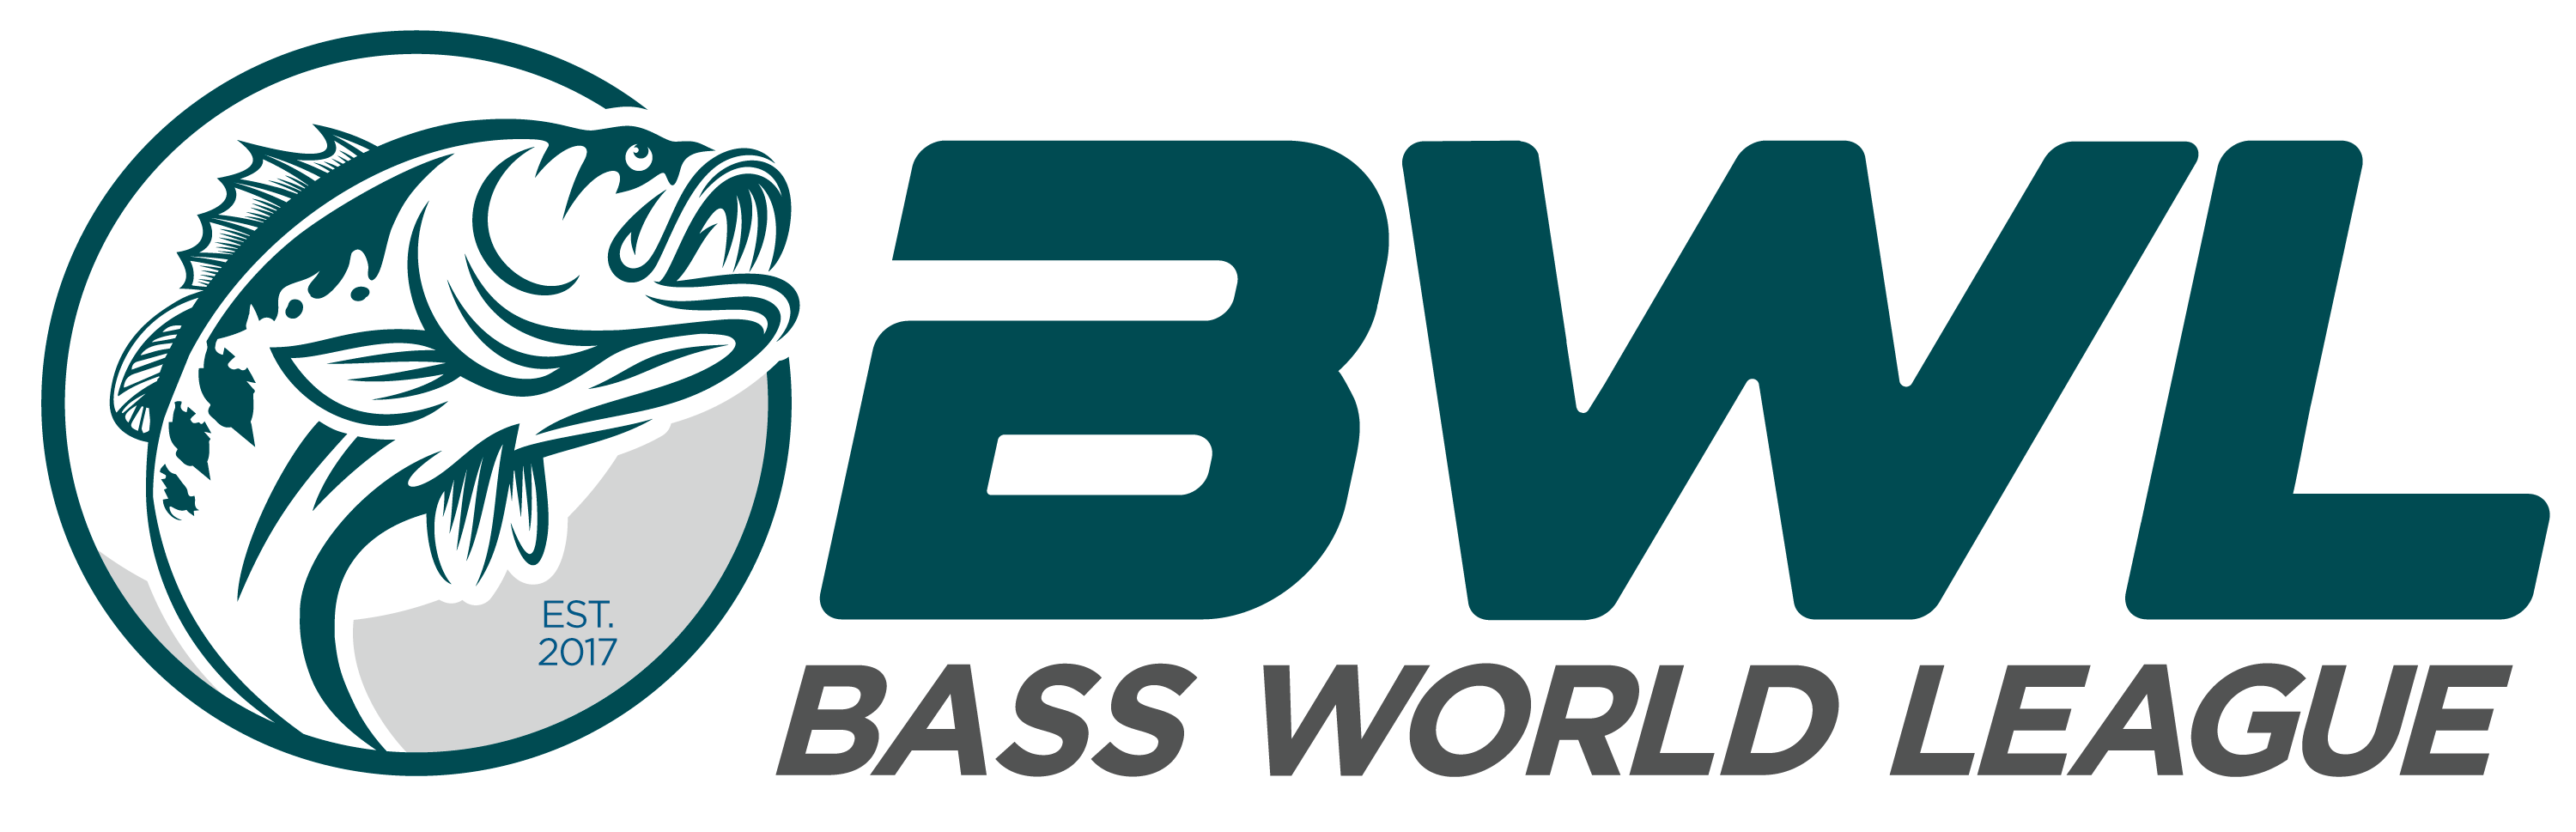 Bass World League